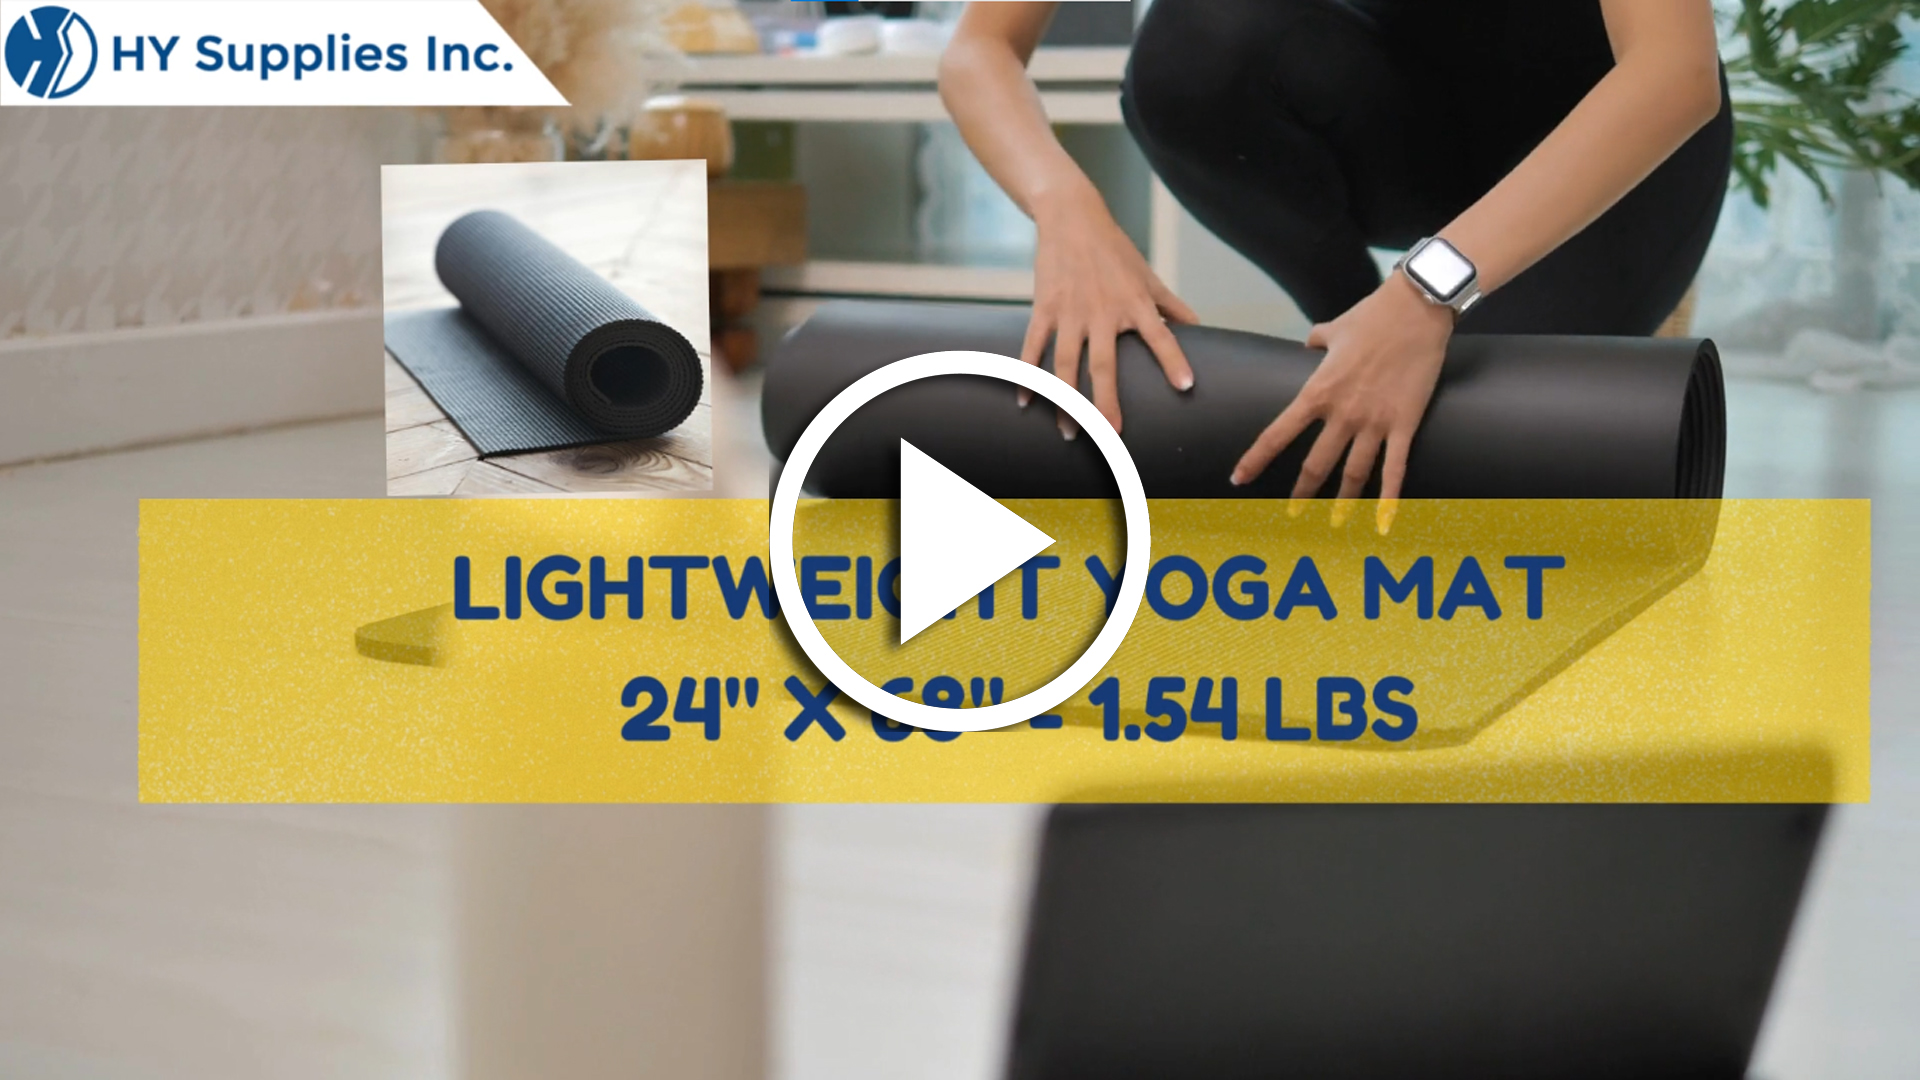 Lightweight Yoga Mat - 24"x 68"- 1.54 lbs